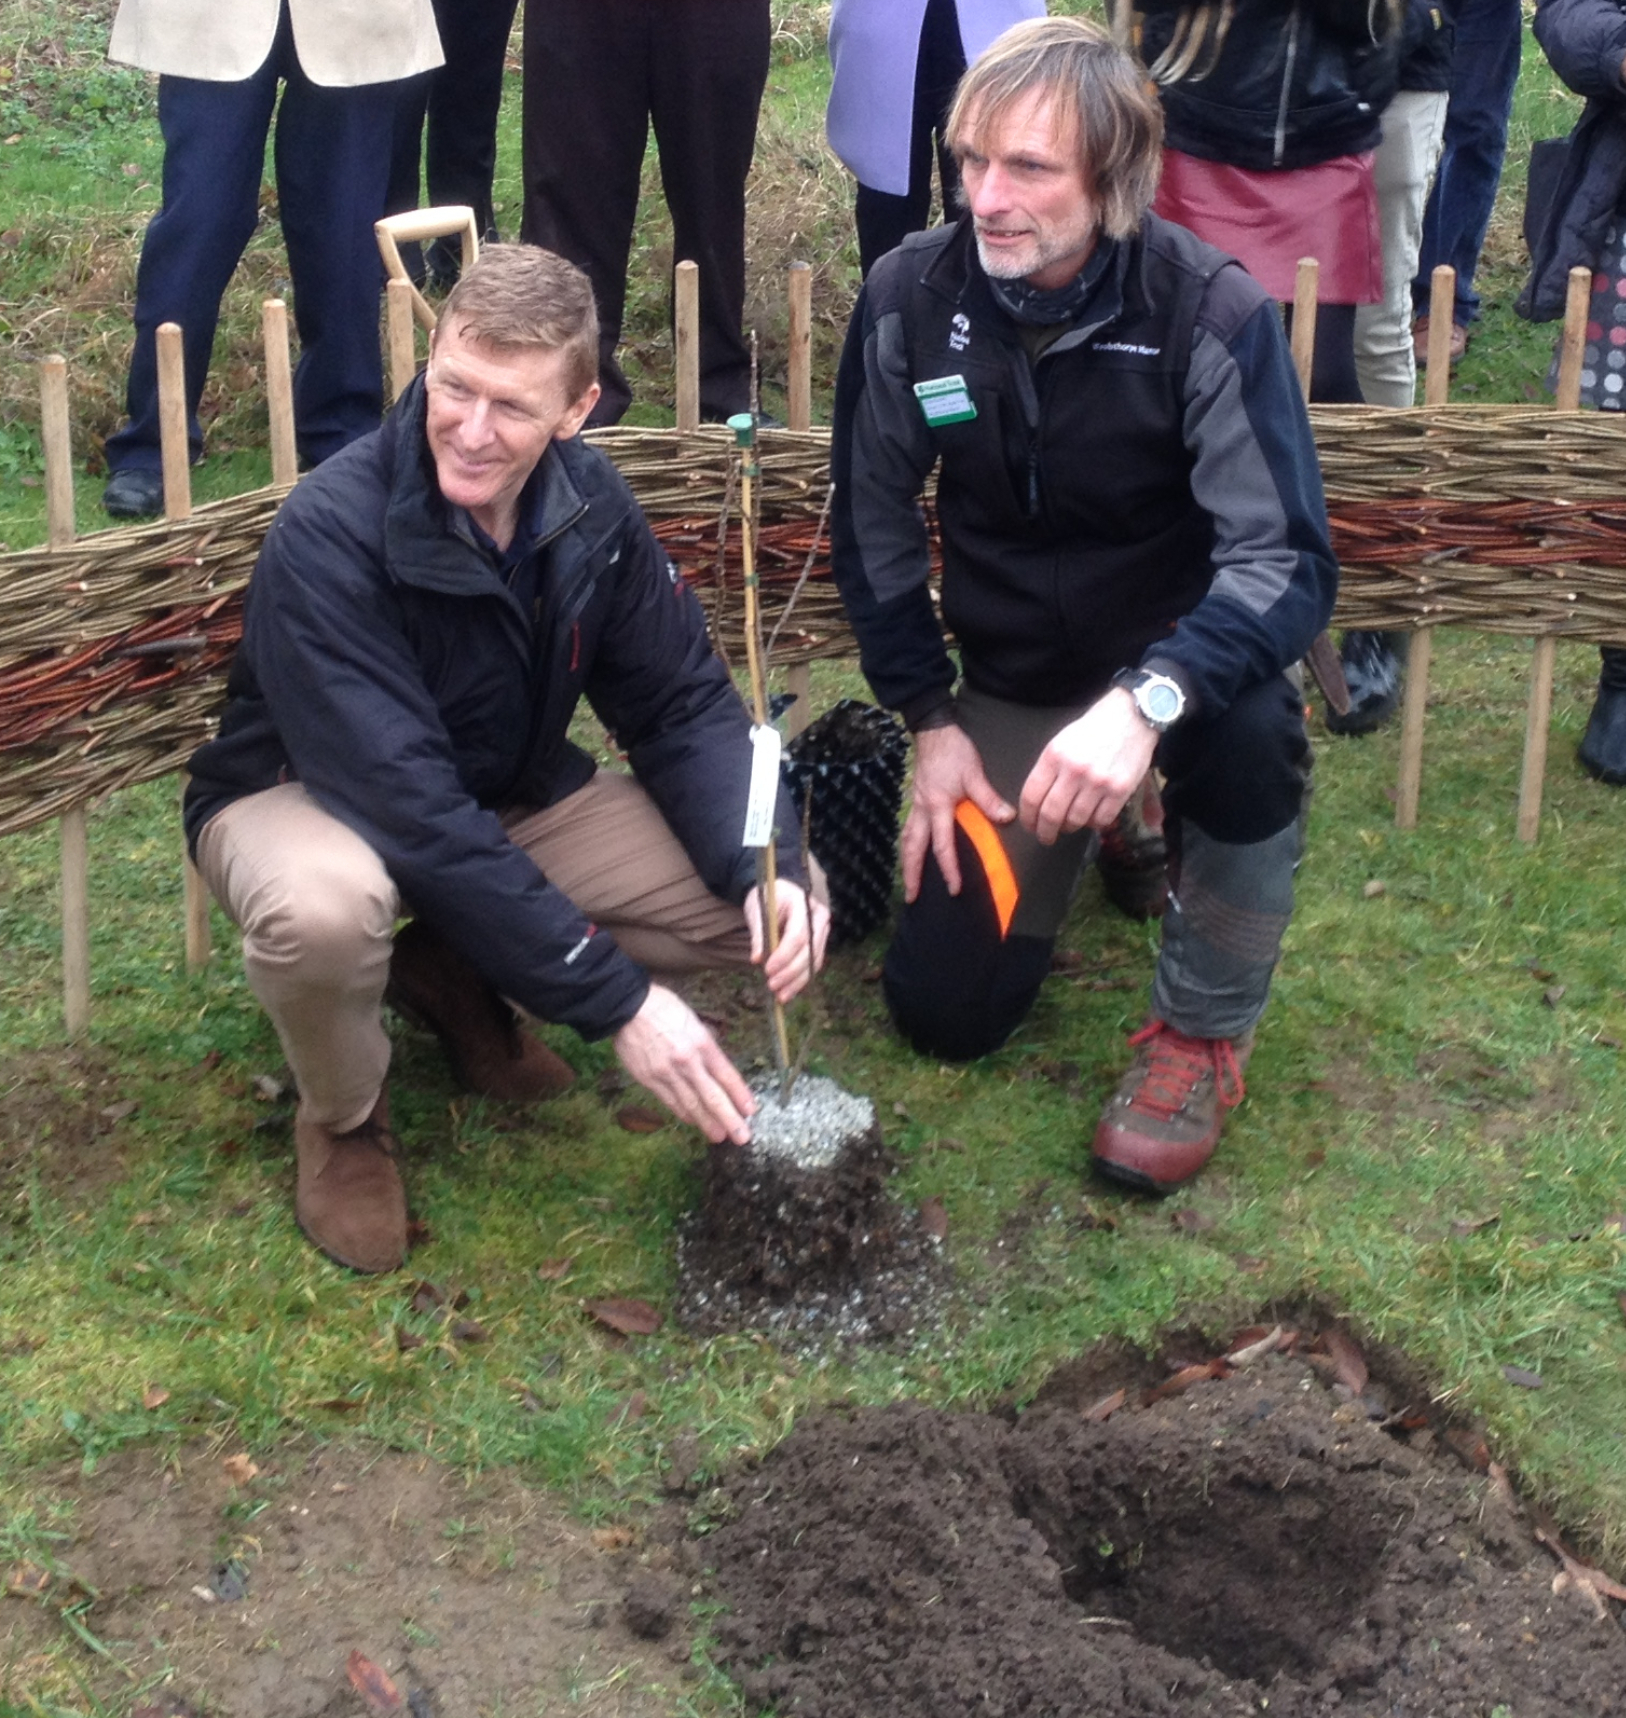 Tim Peake planting Newton's apple tree